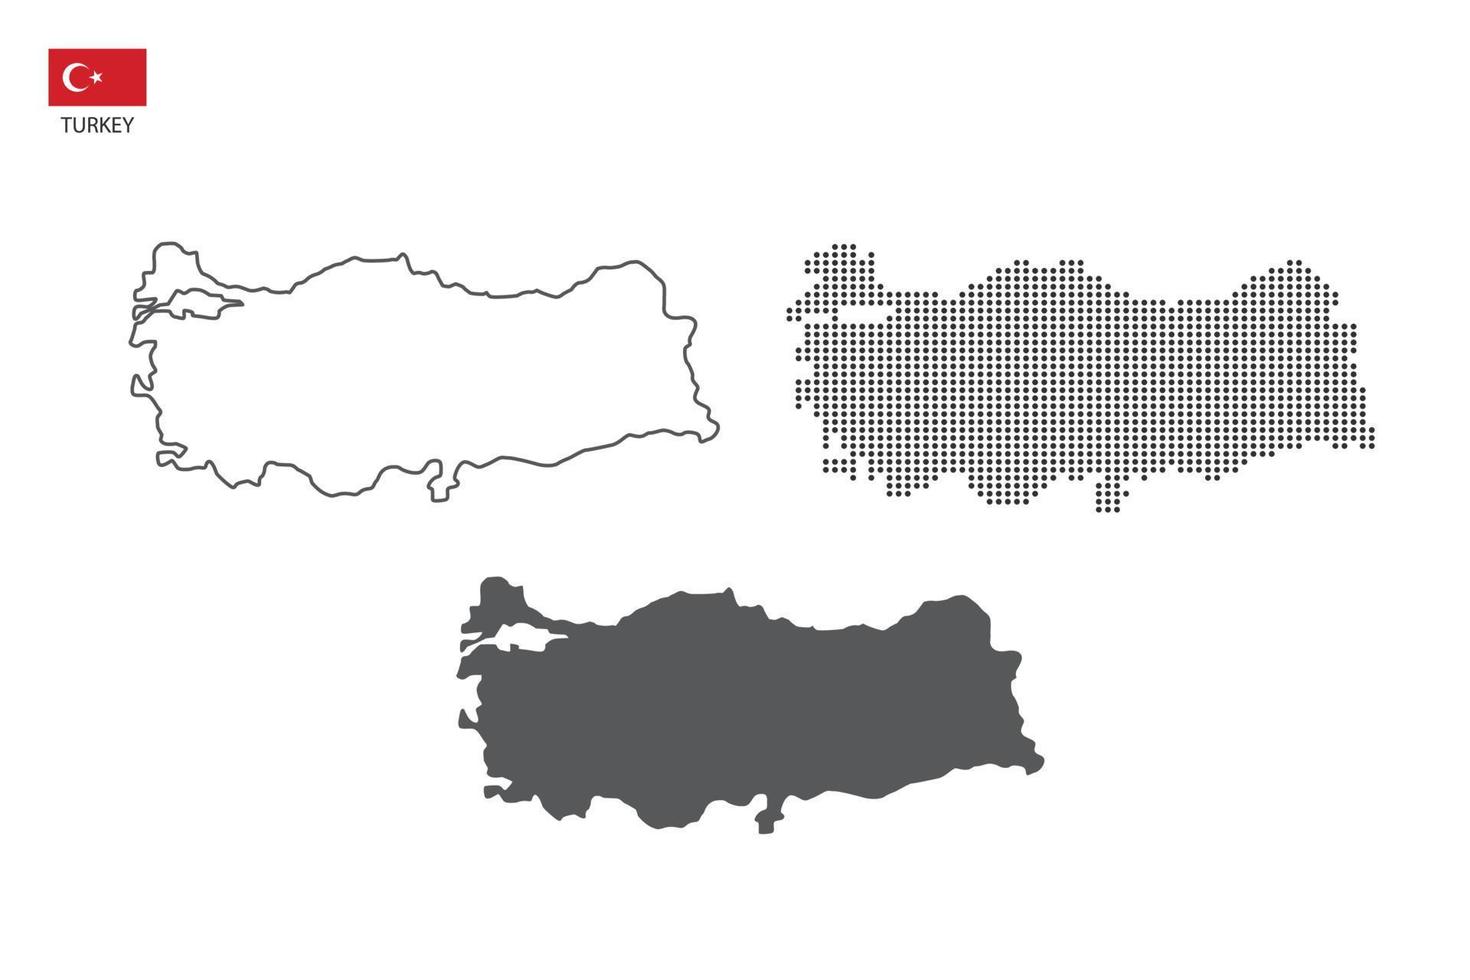 3 versões do vetor da cidade do mapa da Turquia por estilo de simplicidade de contorno preto fino, estilo de ponto preto e estilo de sombra escura. tudo no fundo branco.